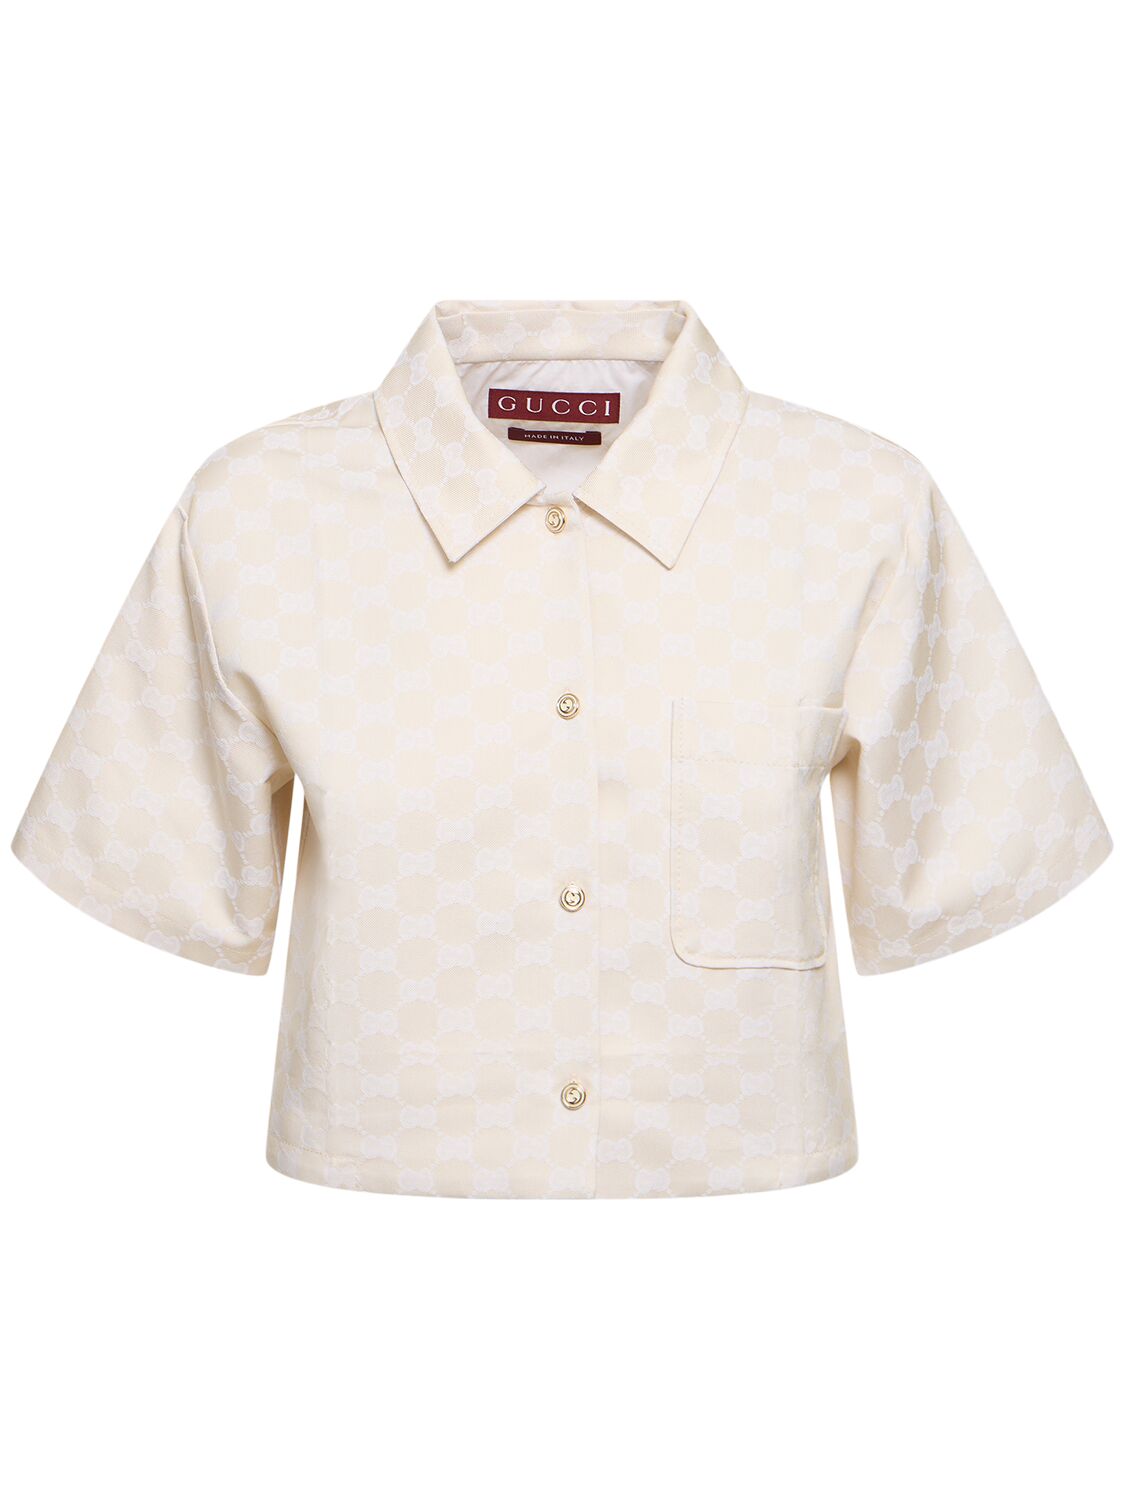 Gg Cotton Blend Shirt - GUCCI - Modalova